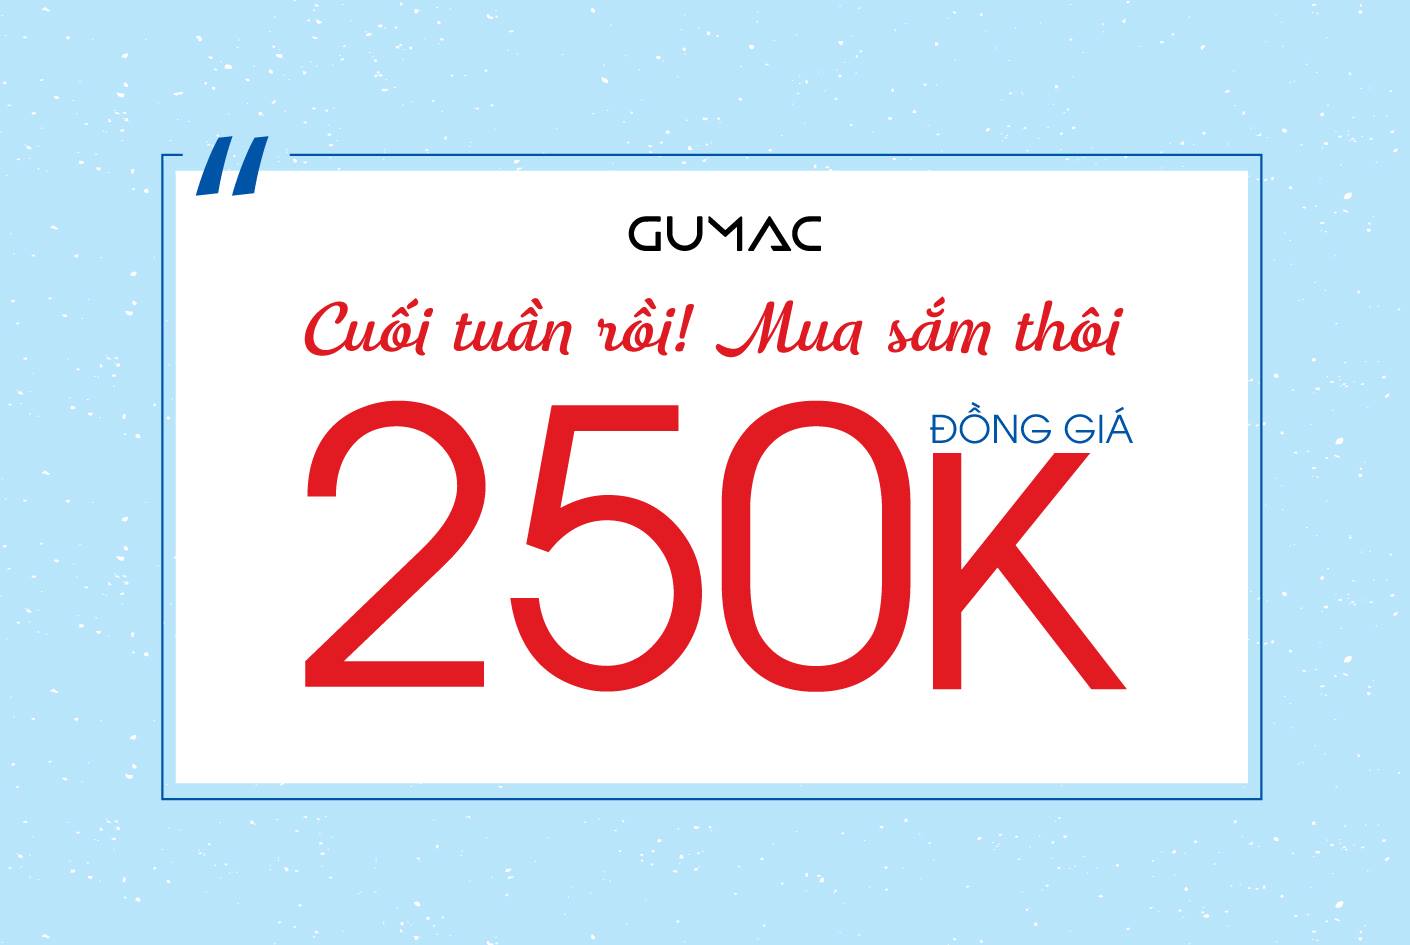 Dàn sao Việt hưởng ứng Milimet yêu thương mừng sinh nhật Gumac